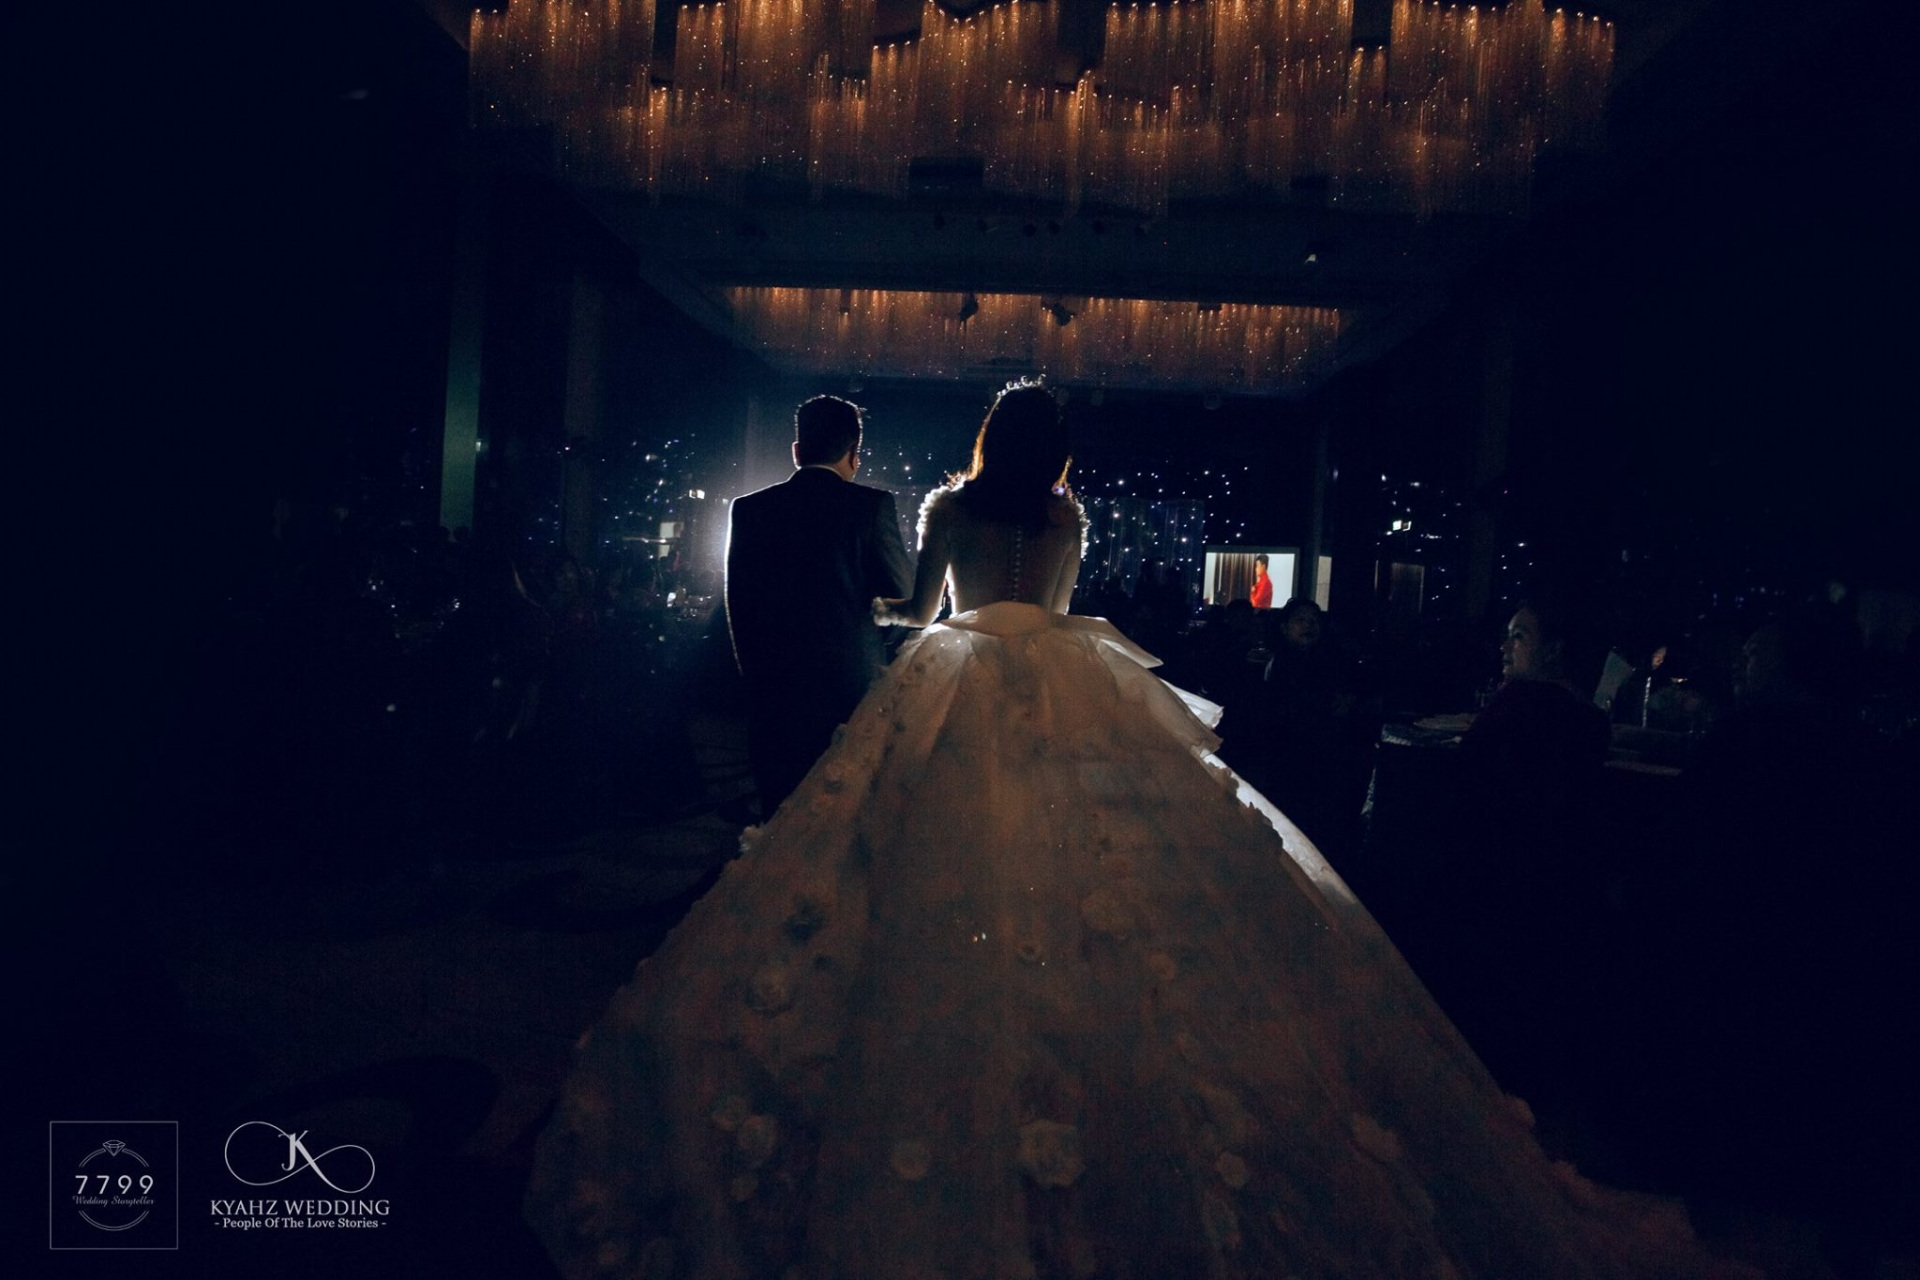 Nghệ thuật ánh sáng trong đám cưới, bạn có biết?